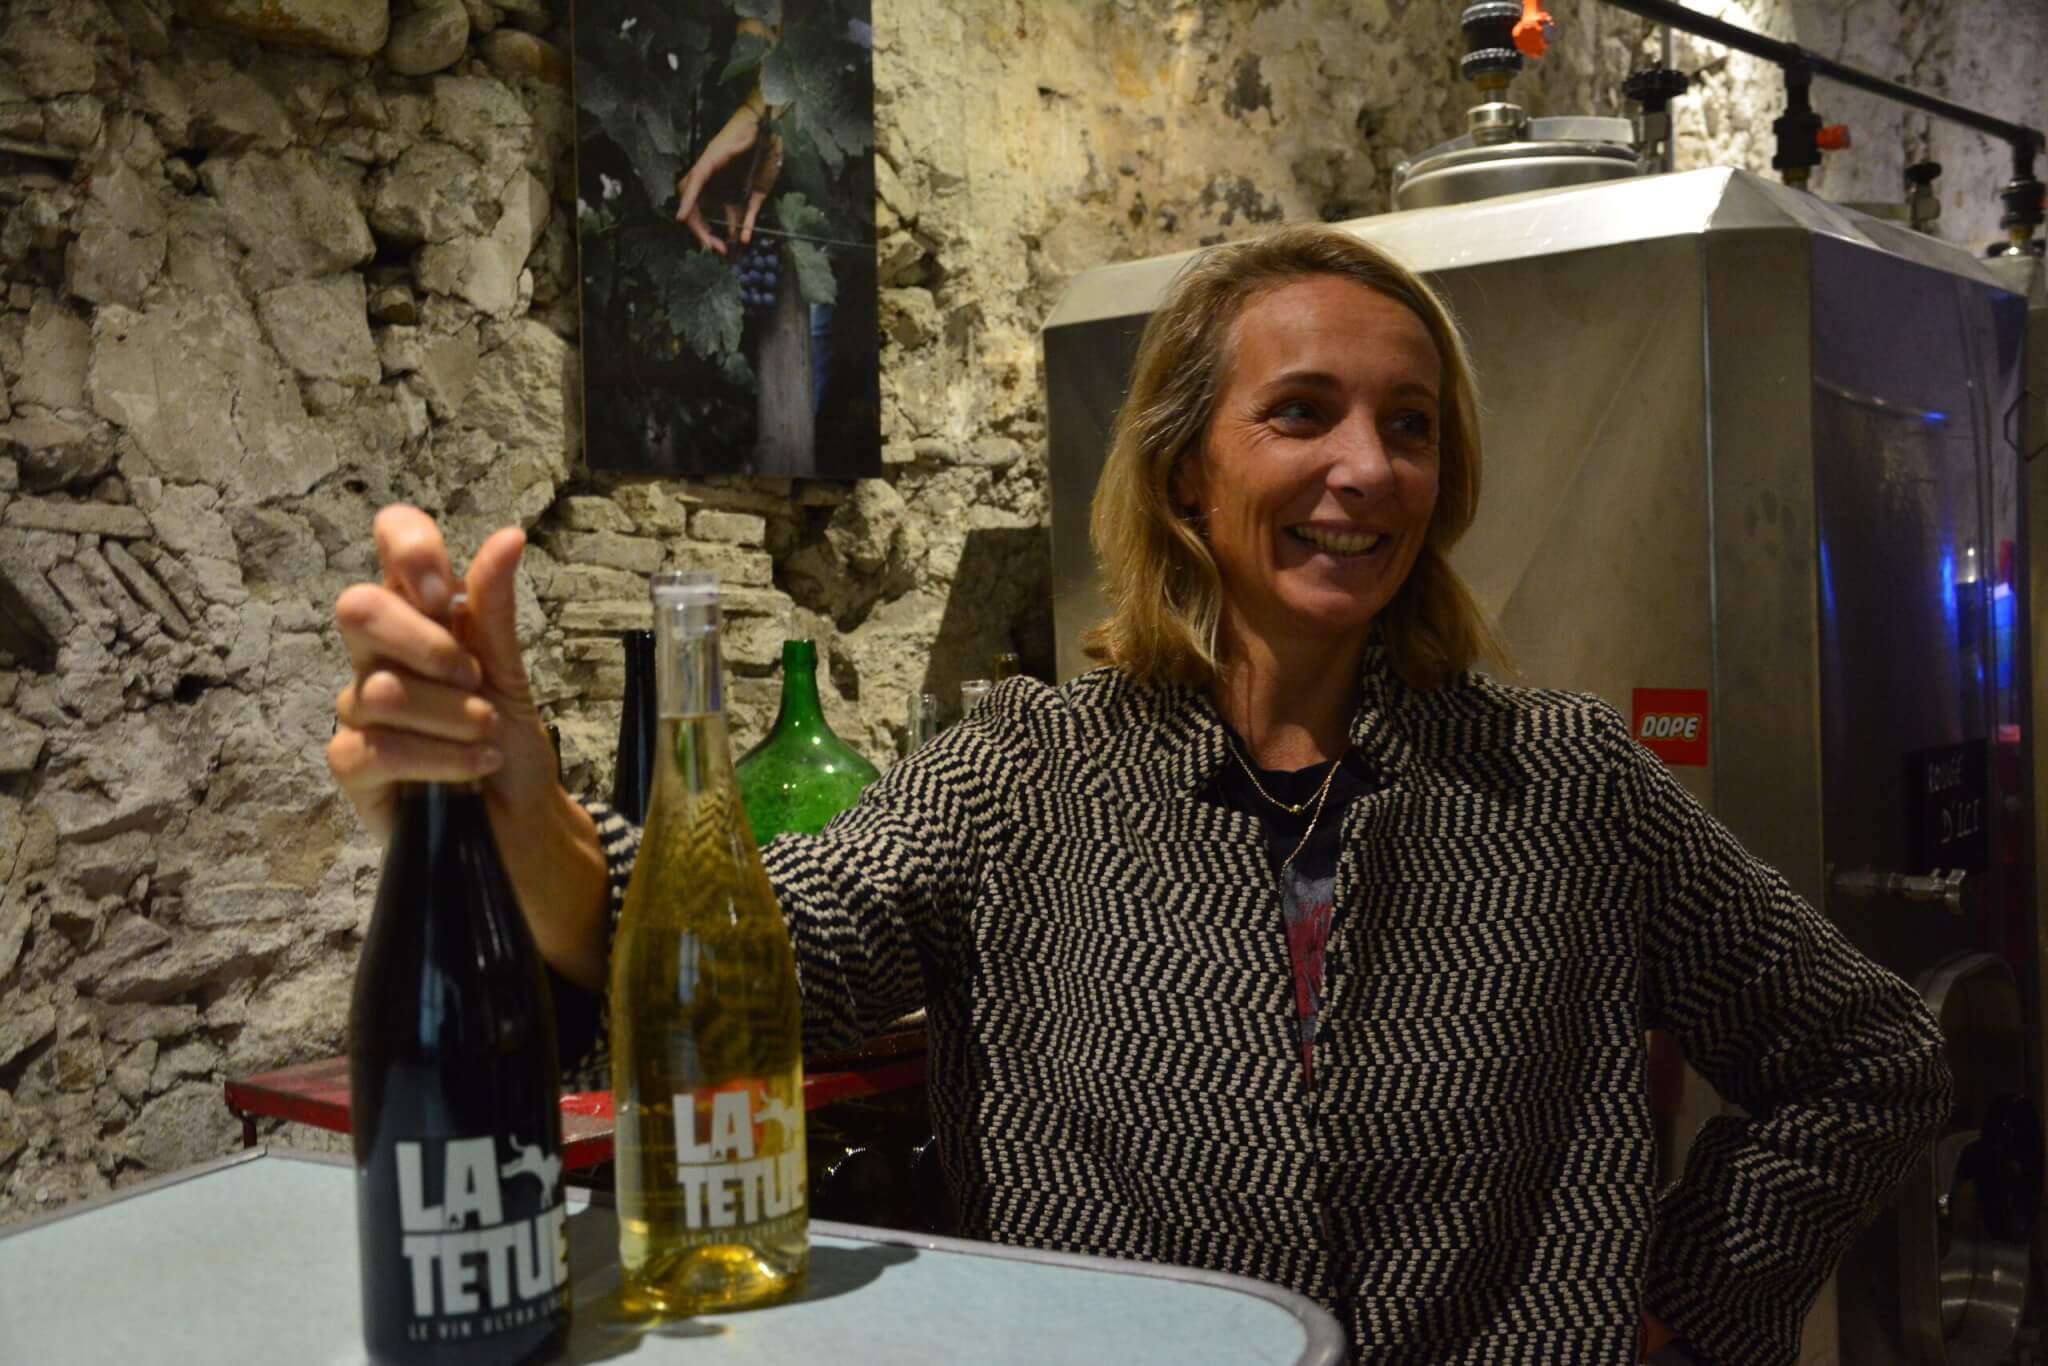 La fondatrice la Têtue, Géraldine Dubois, vend son vin uniquement à Lyon. ©PL/Rue89Lyon.